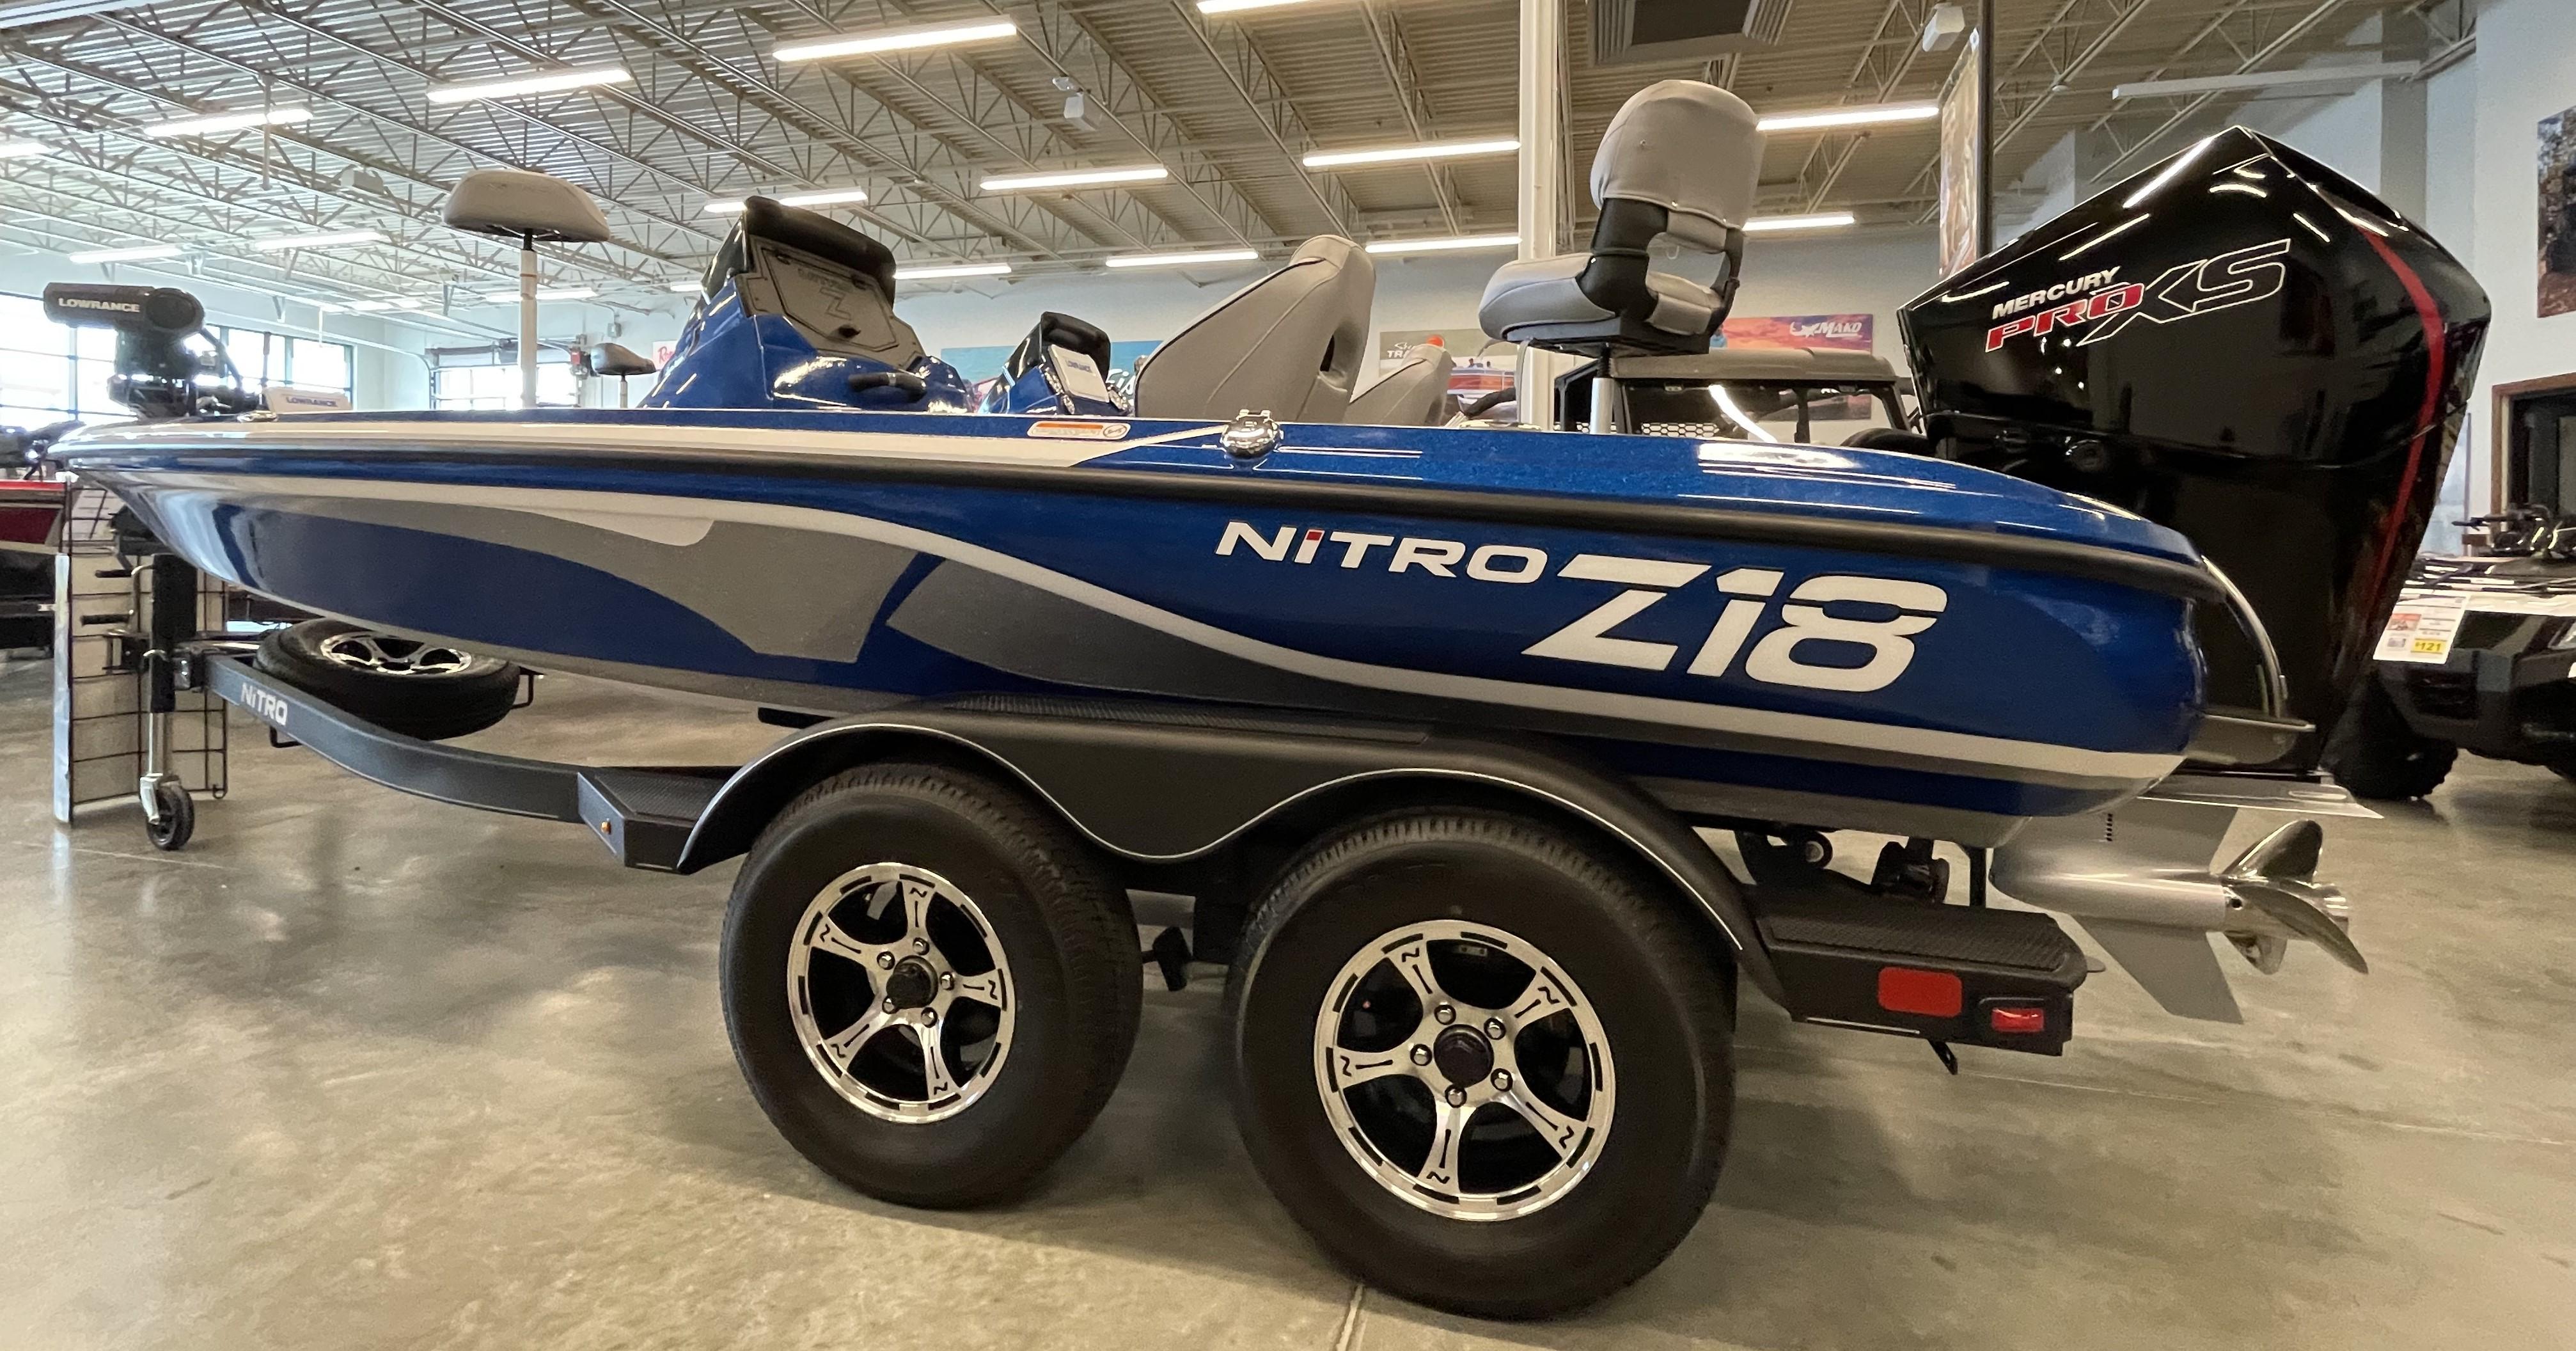 New 2024 Nitro Z18, 77573 League City Boat Trader